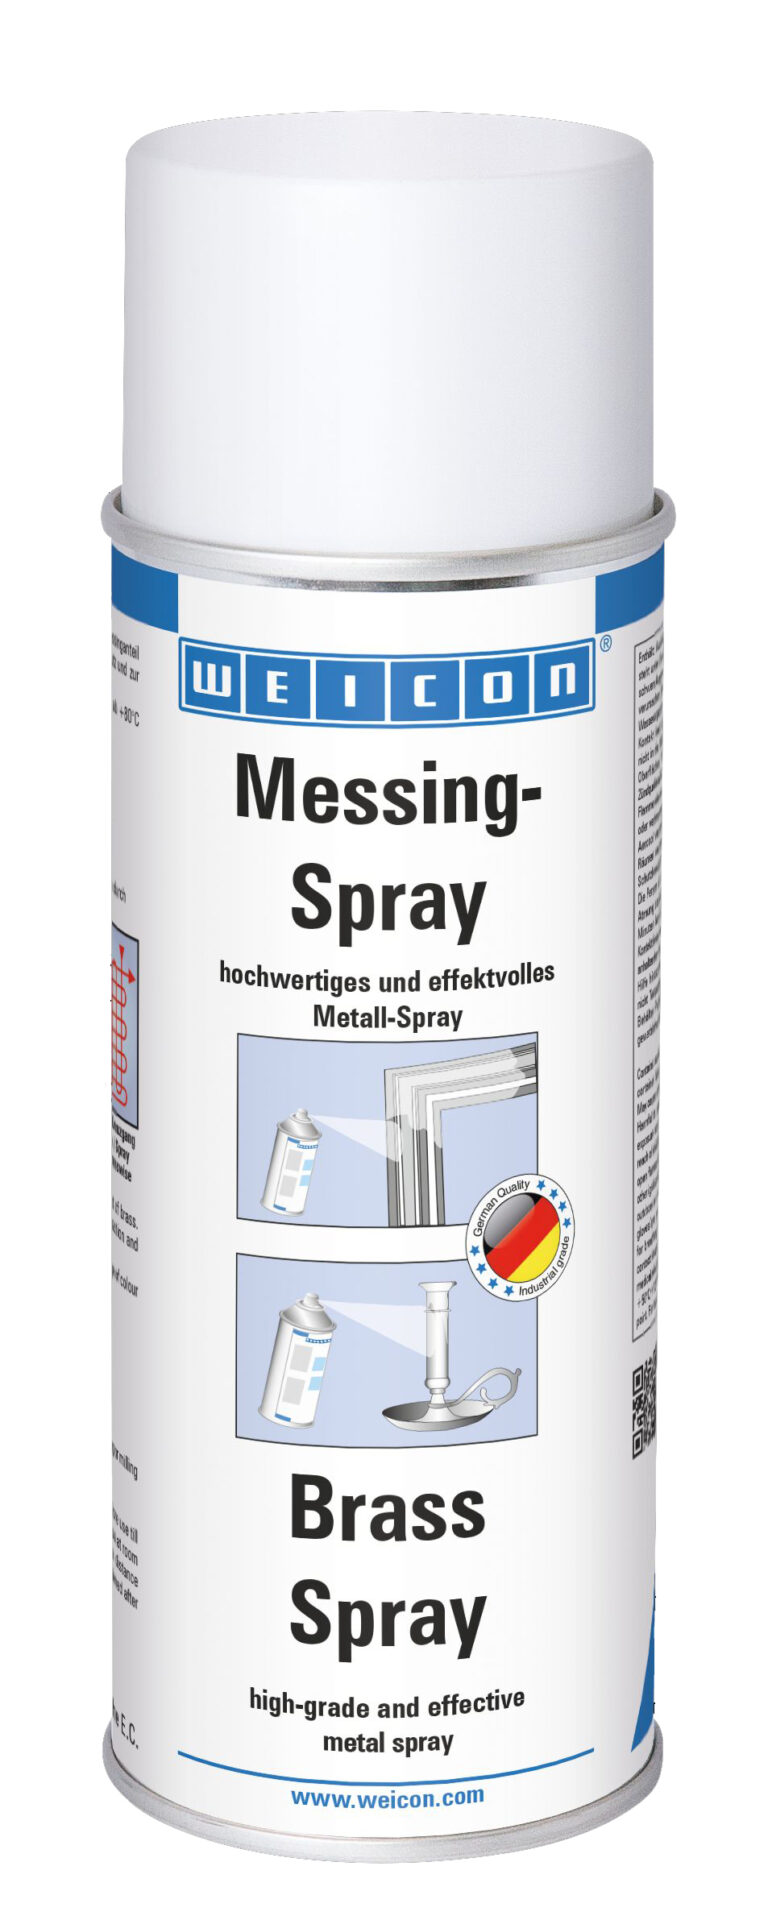 Messing Spray